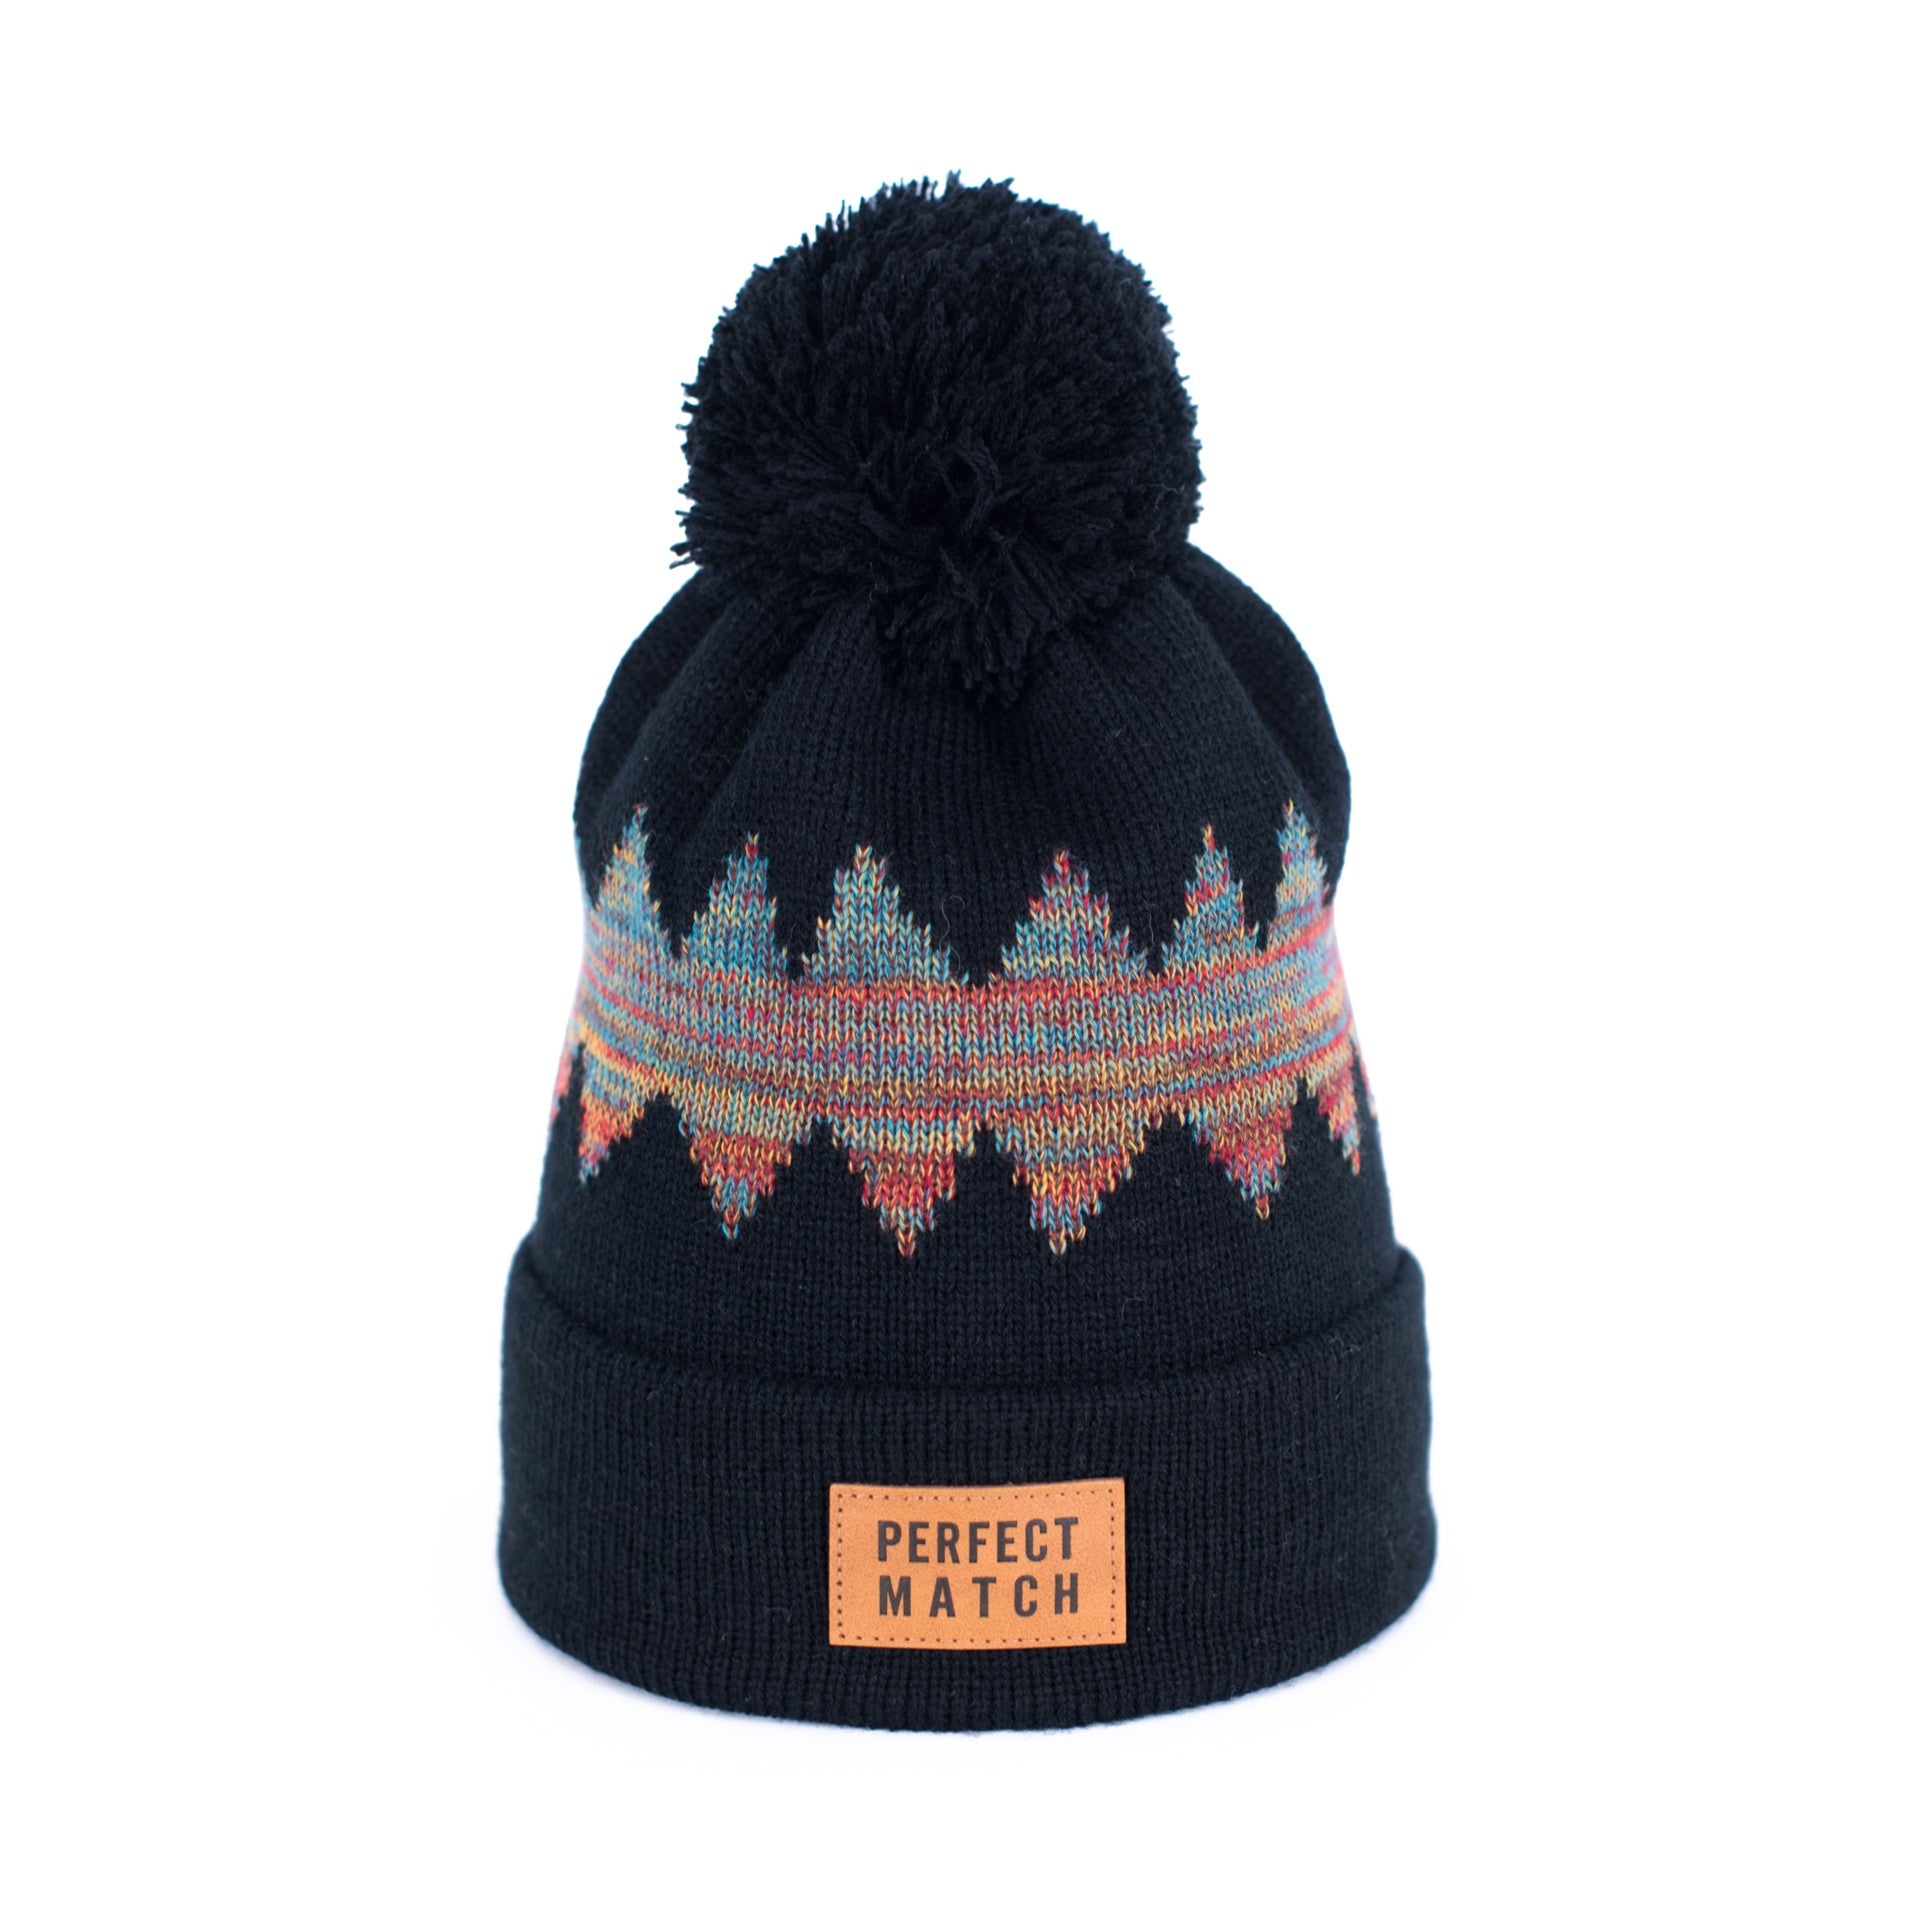 Aspen Pompom Hat - Black & Multicoloured